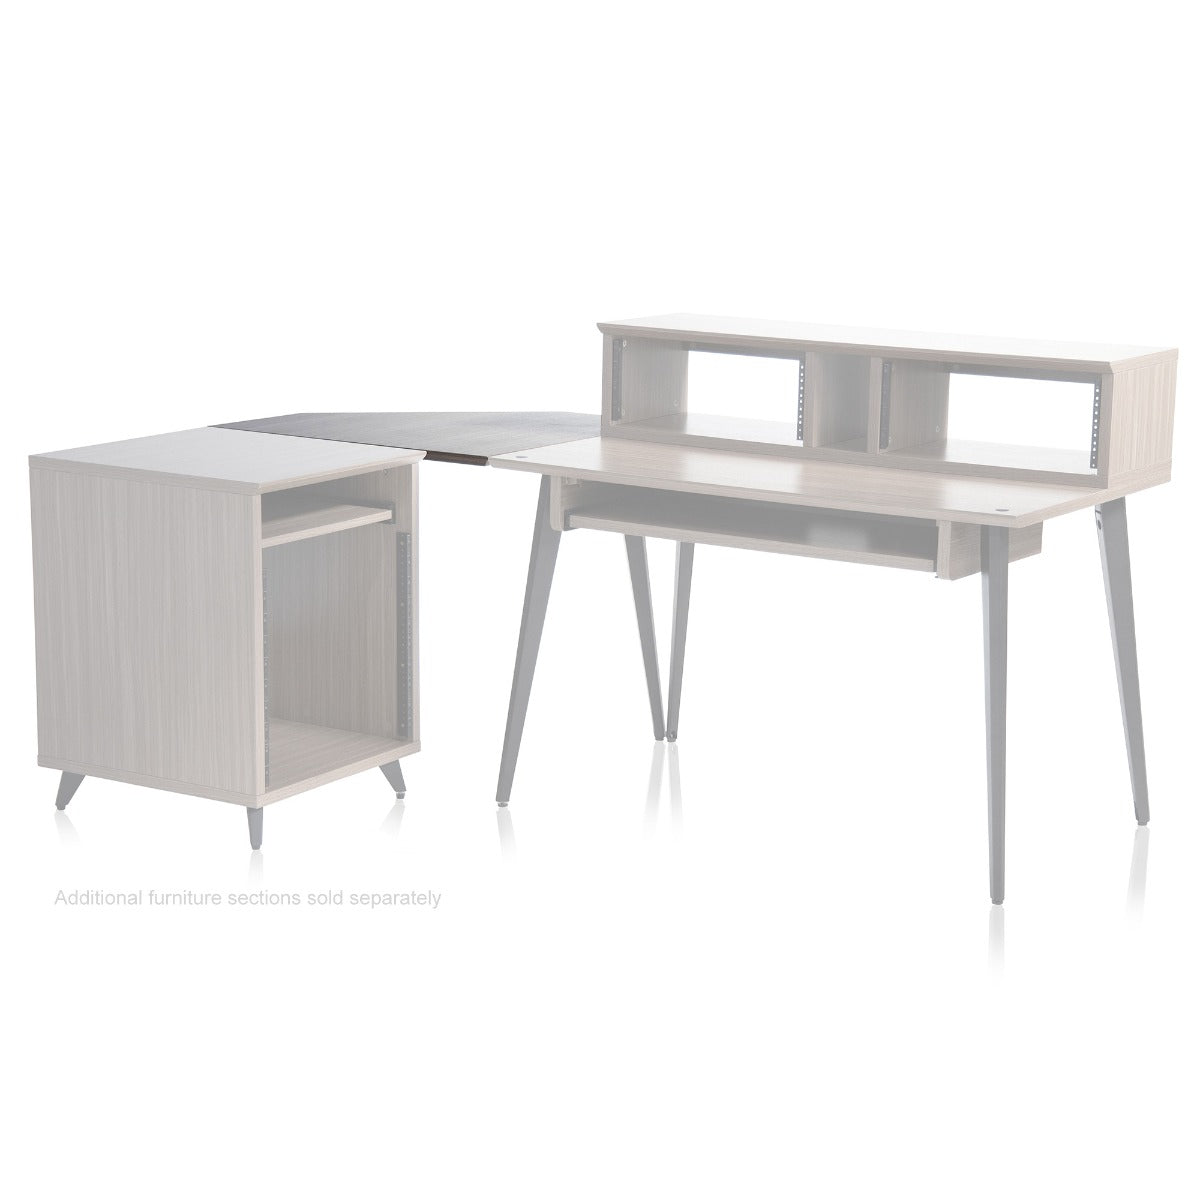 Gator Frameworks Elite Series Furniture Desk Corner Section  - Grey shown with the complete set 